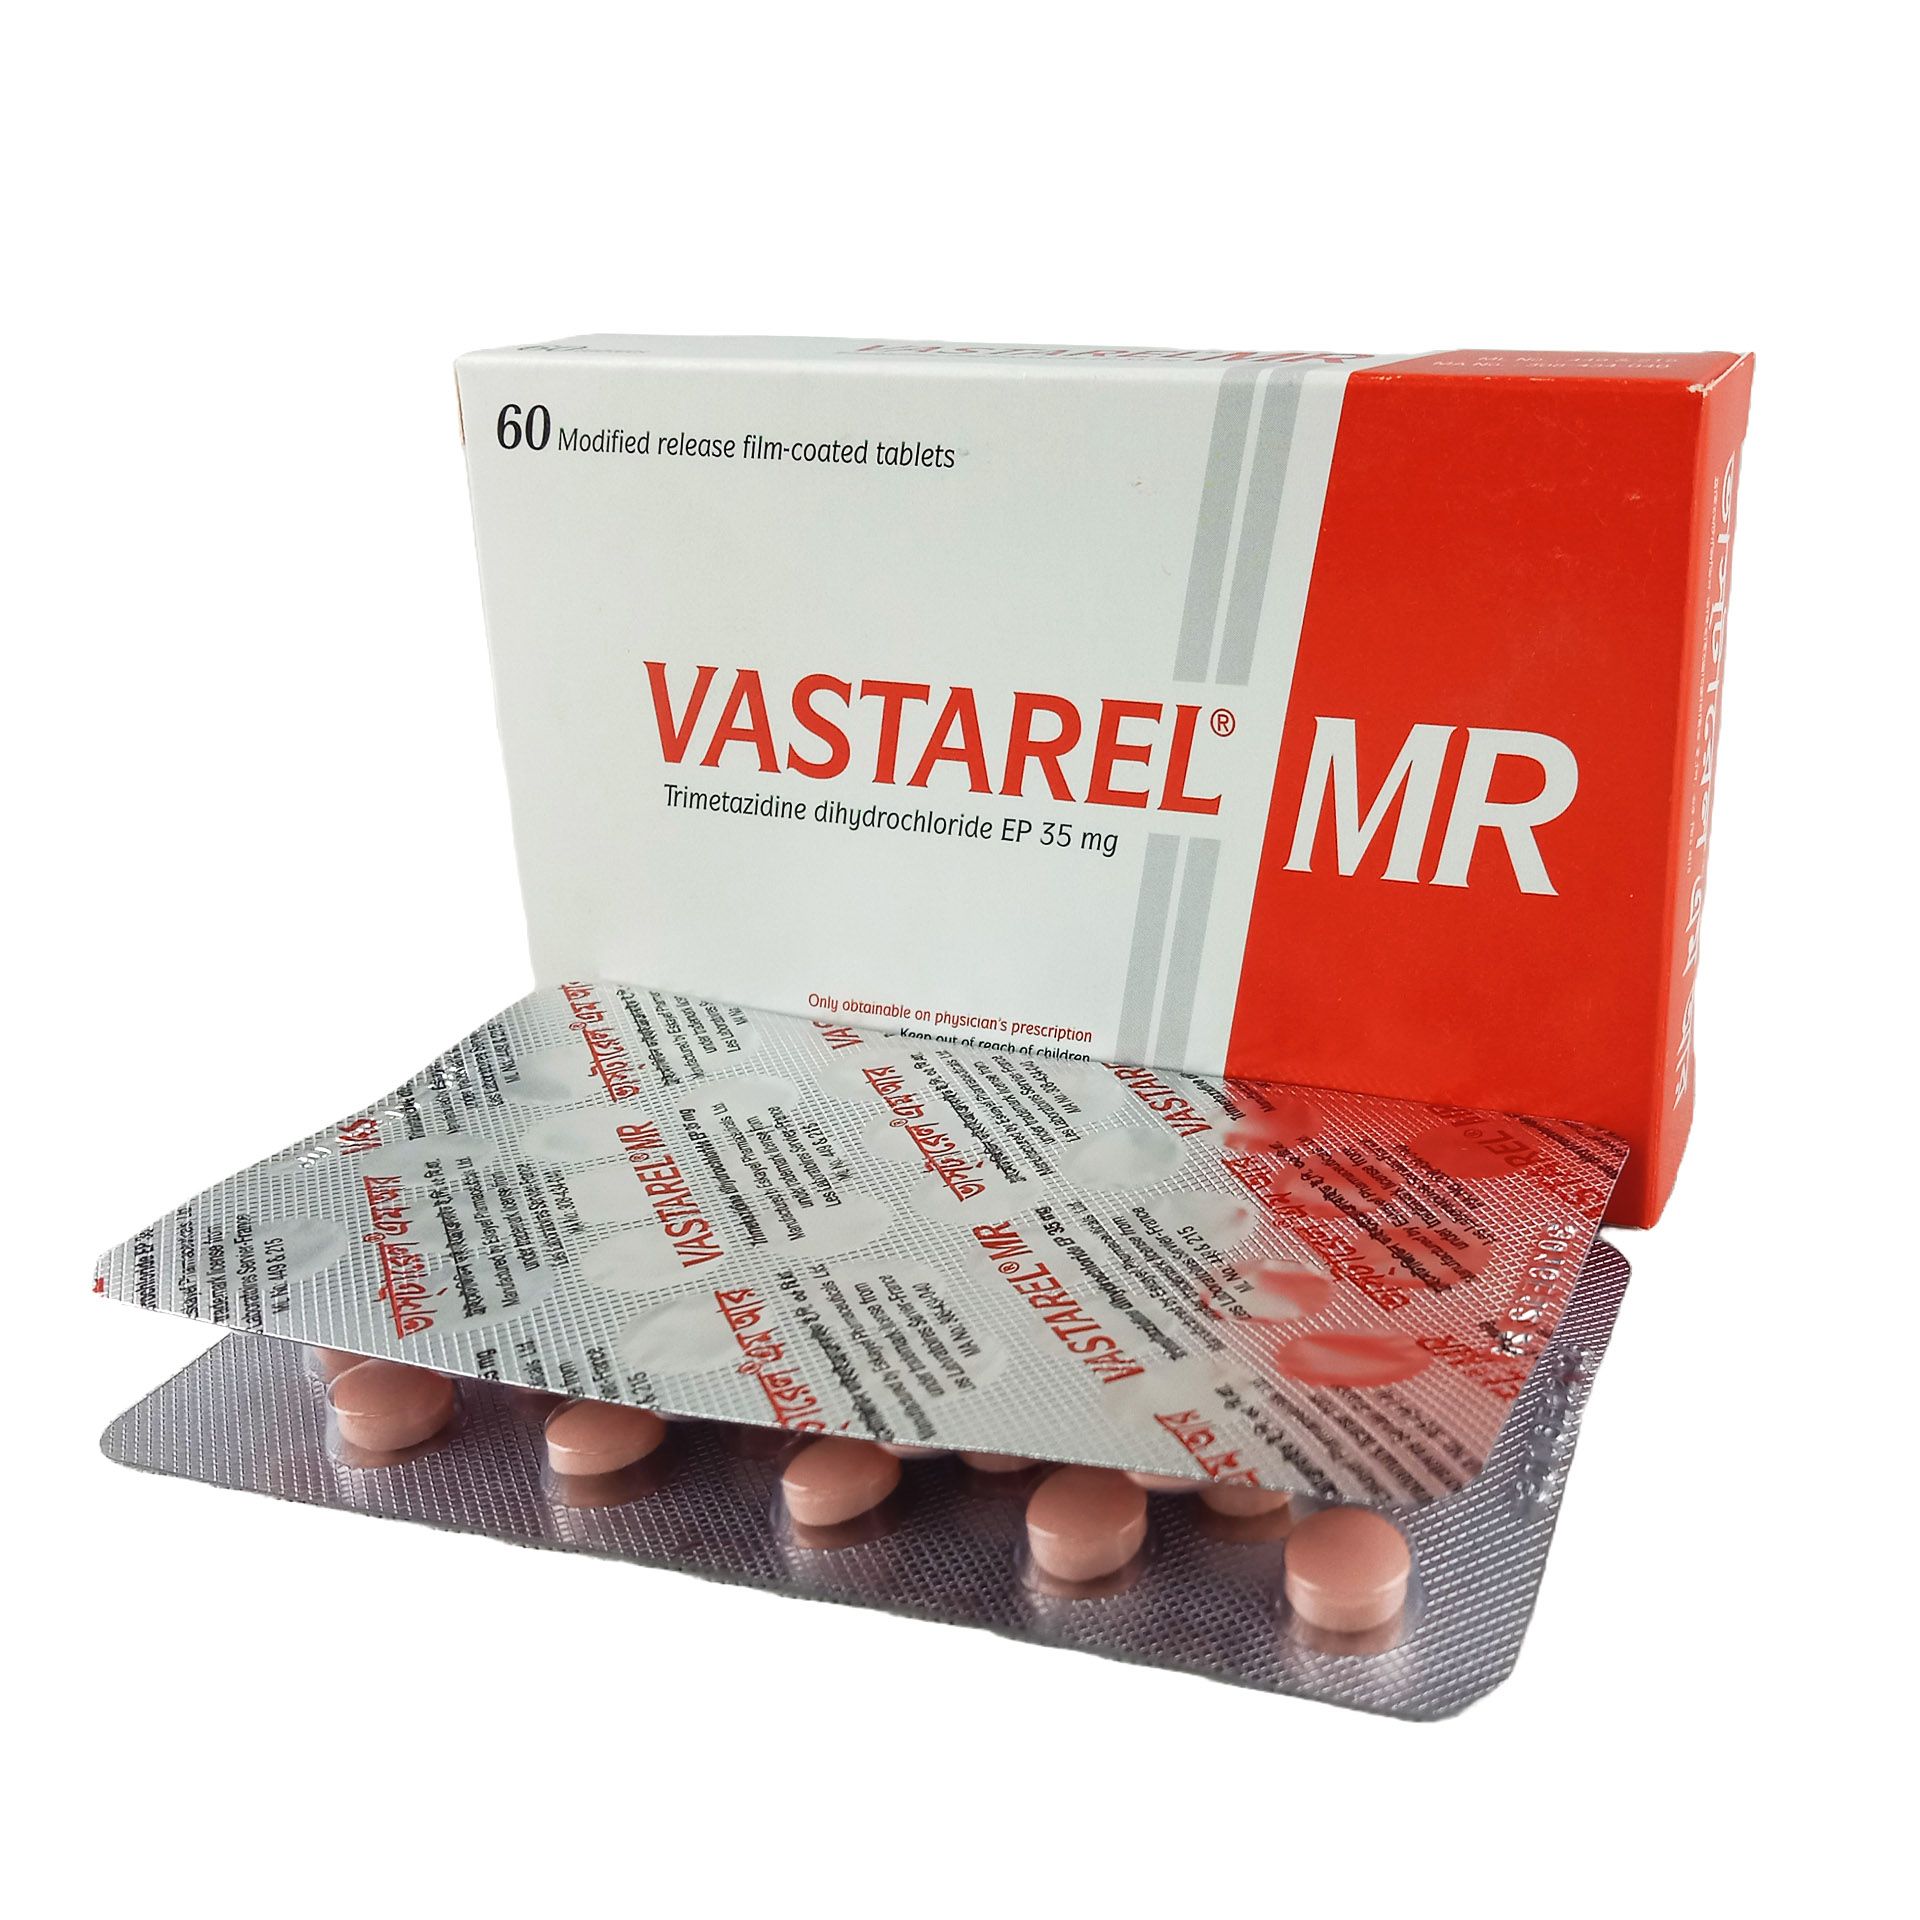 Vastarel MR 35mg tablet